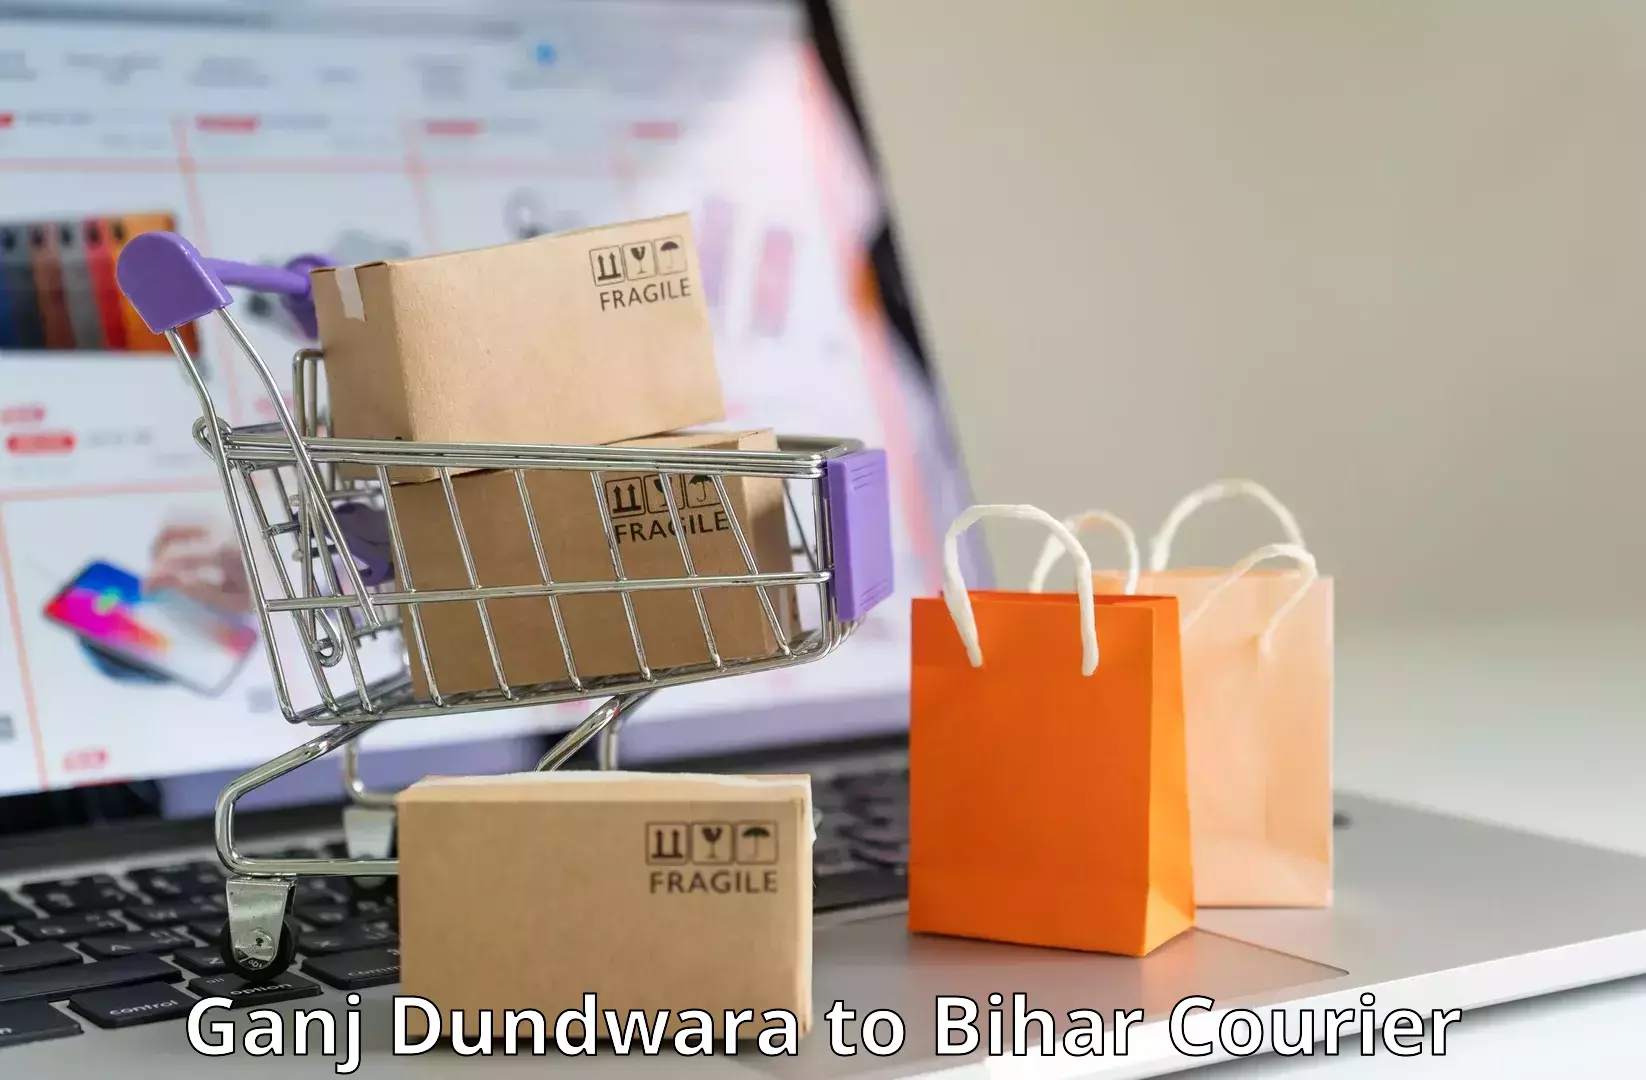 24-hour delivery options Ganj Dundwara to Barhiya